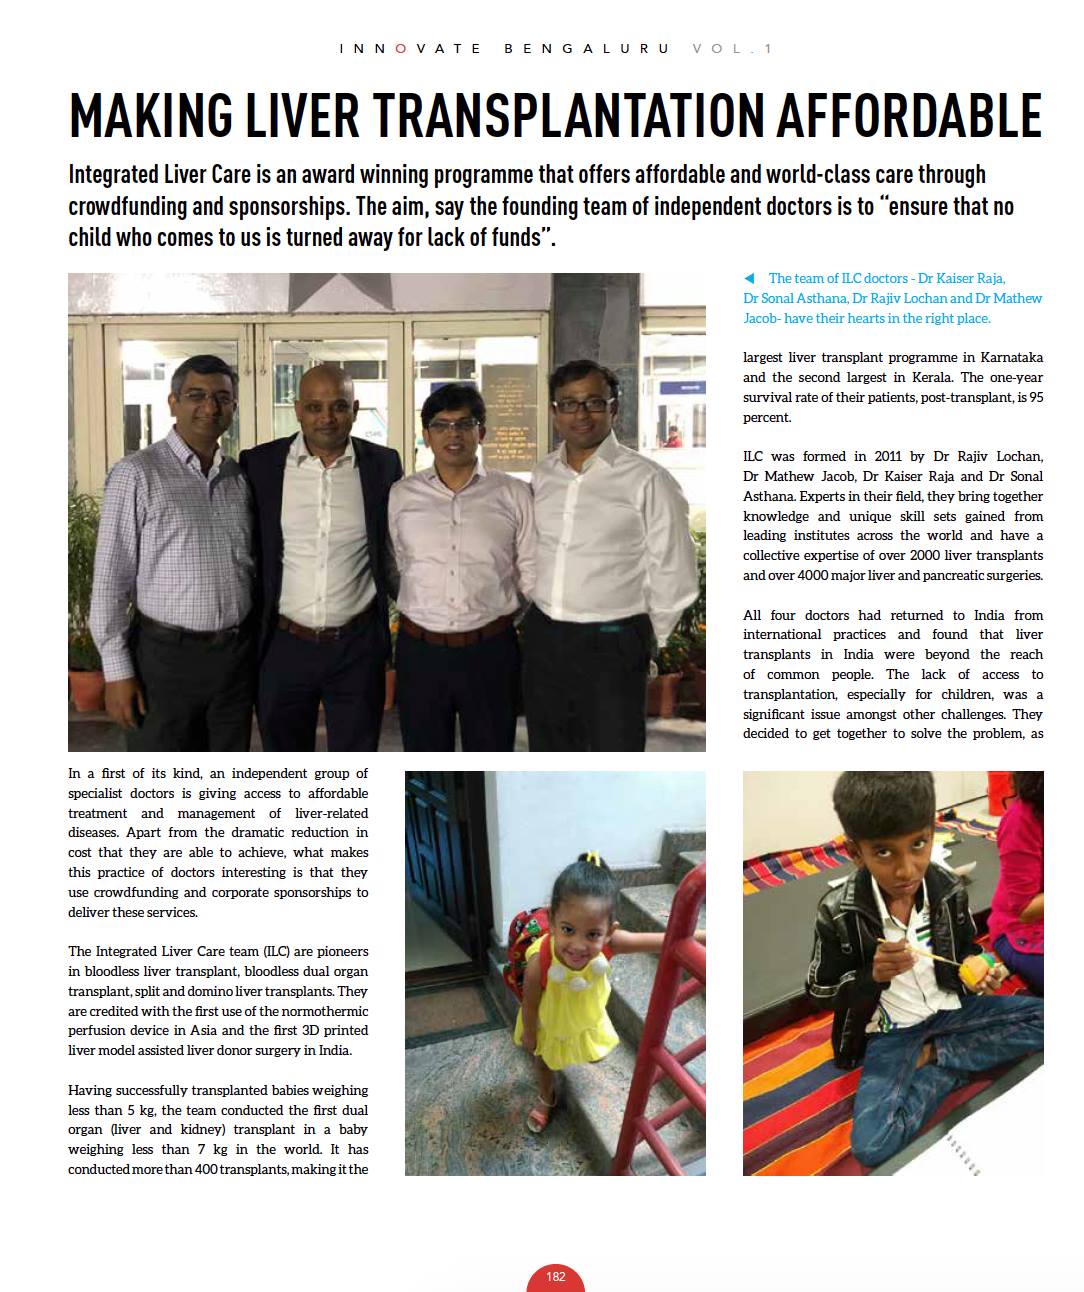 Making Liver transplantation affordable